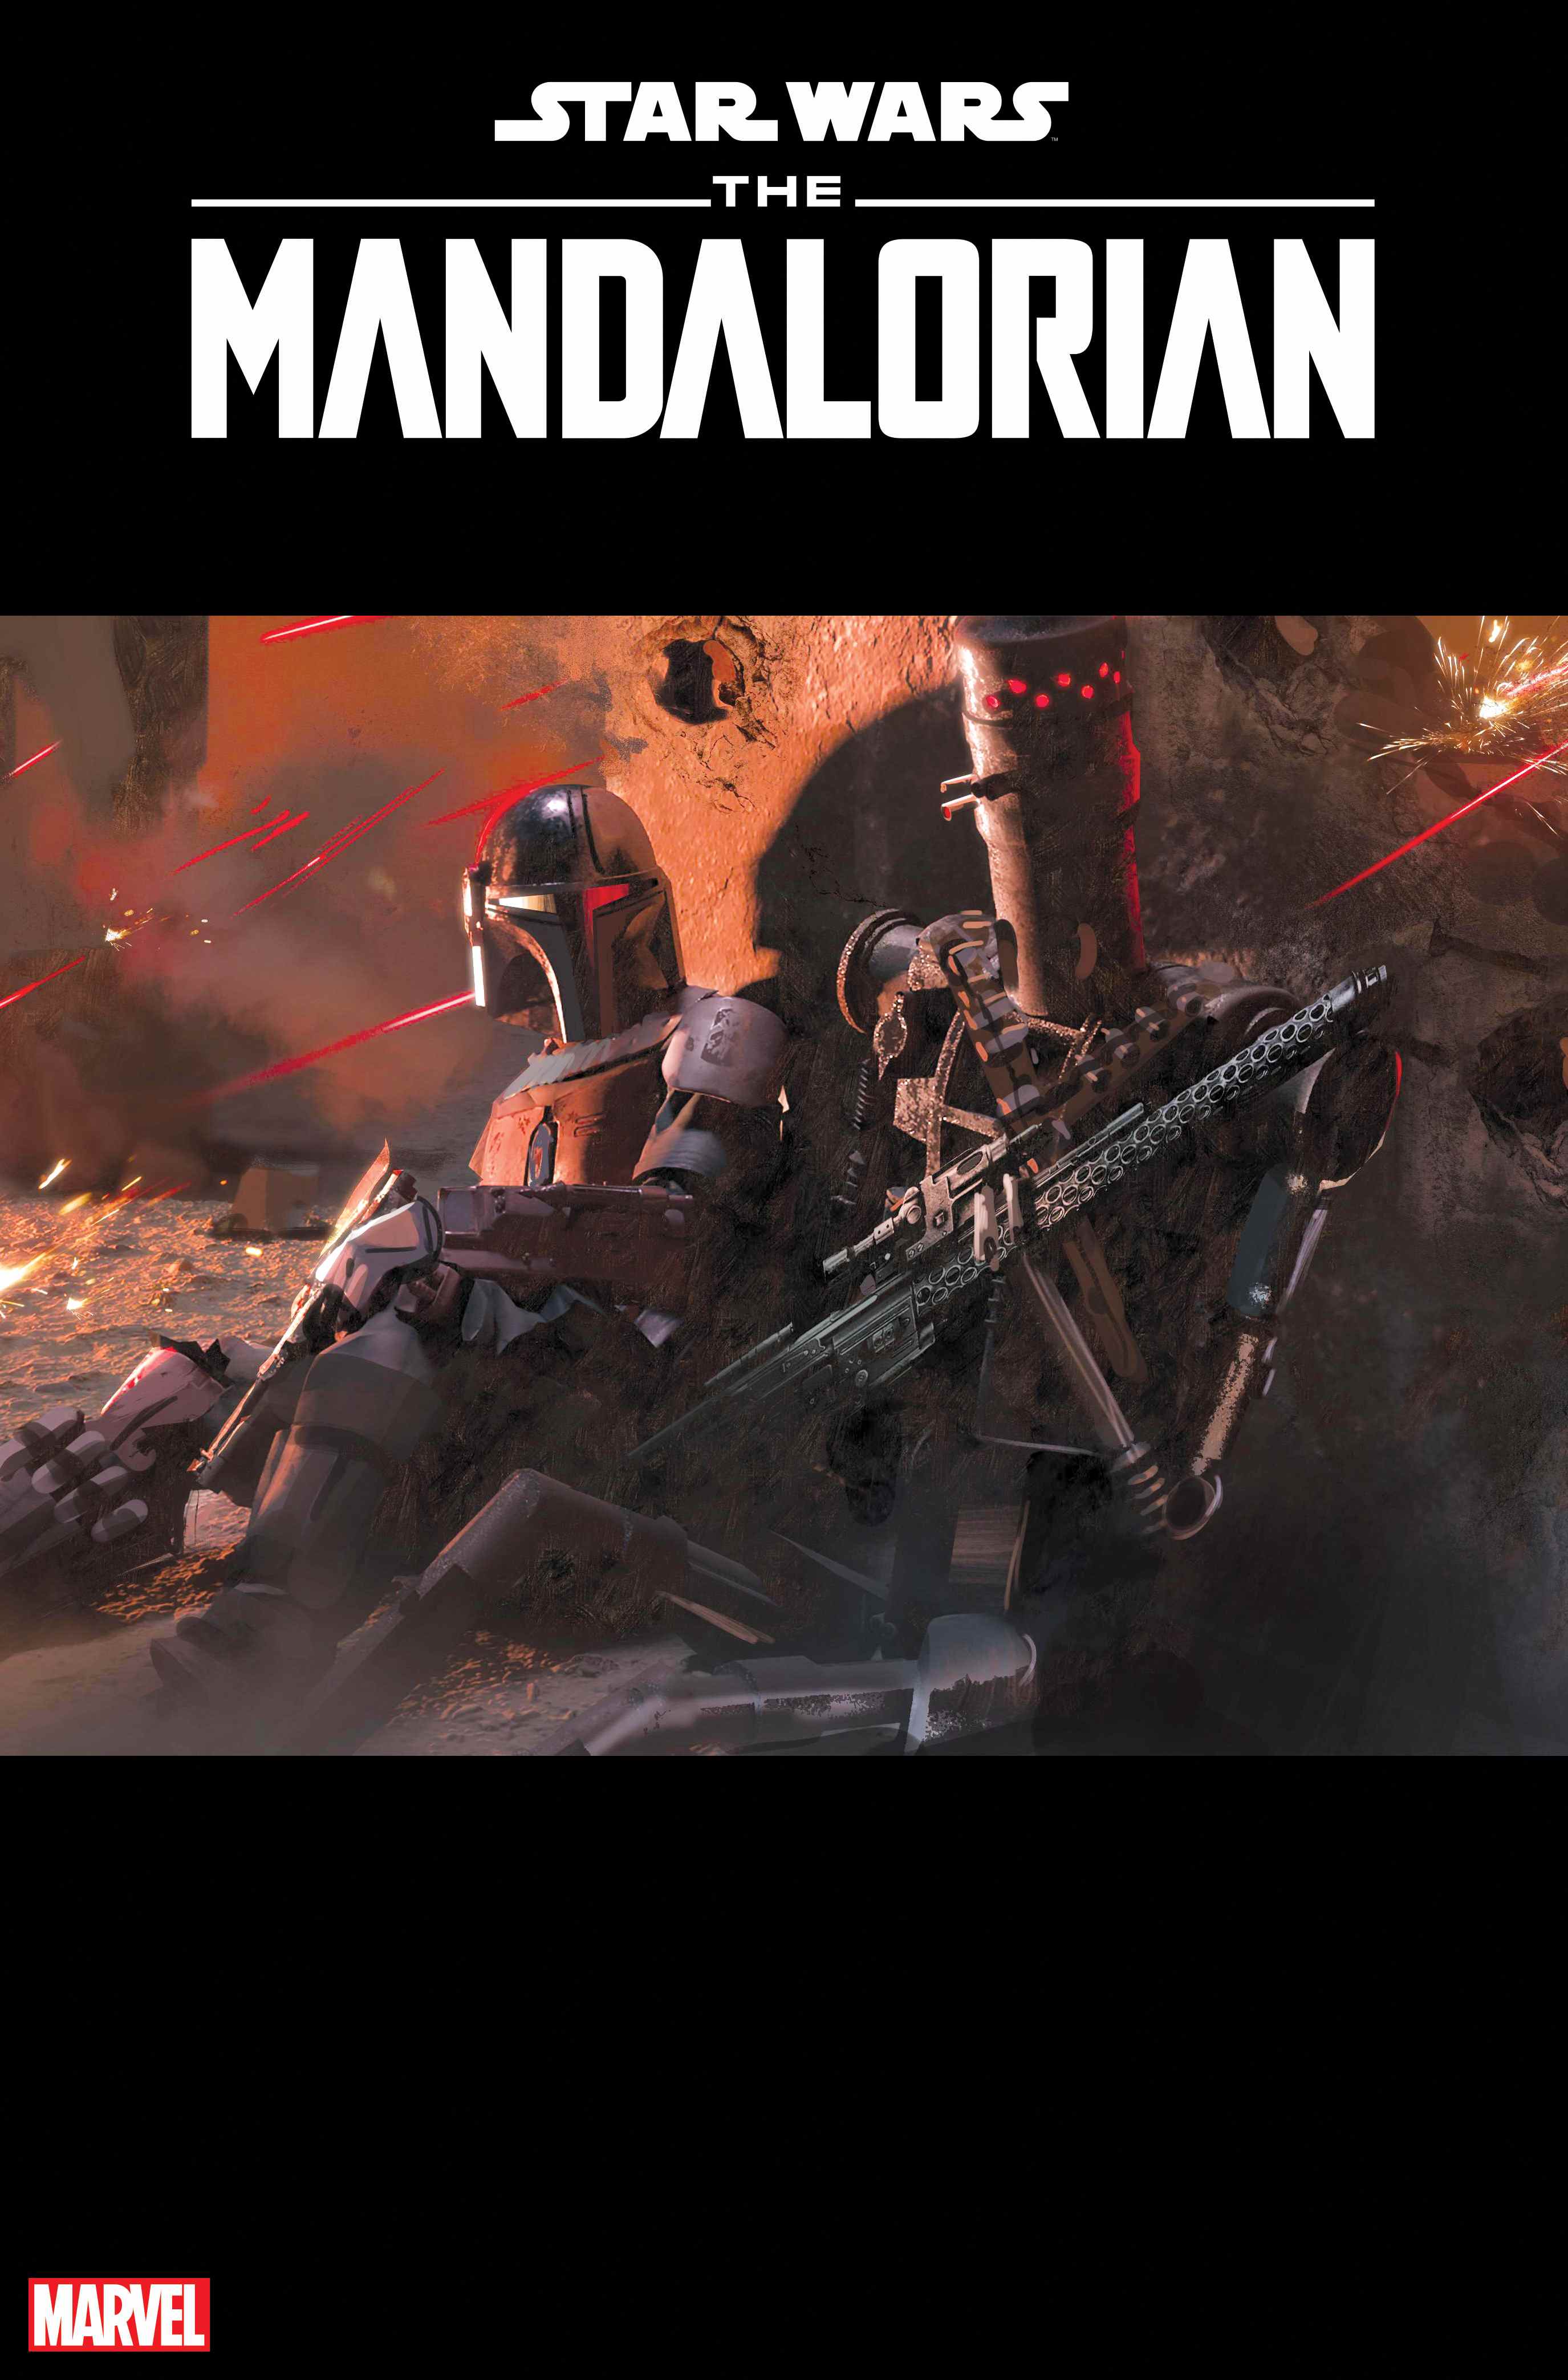 Couverture de la variante Star Wars: The Mandalorian # 1 par Nick Gindaux